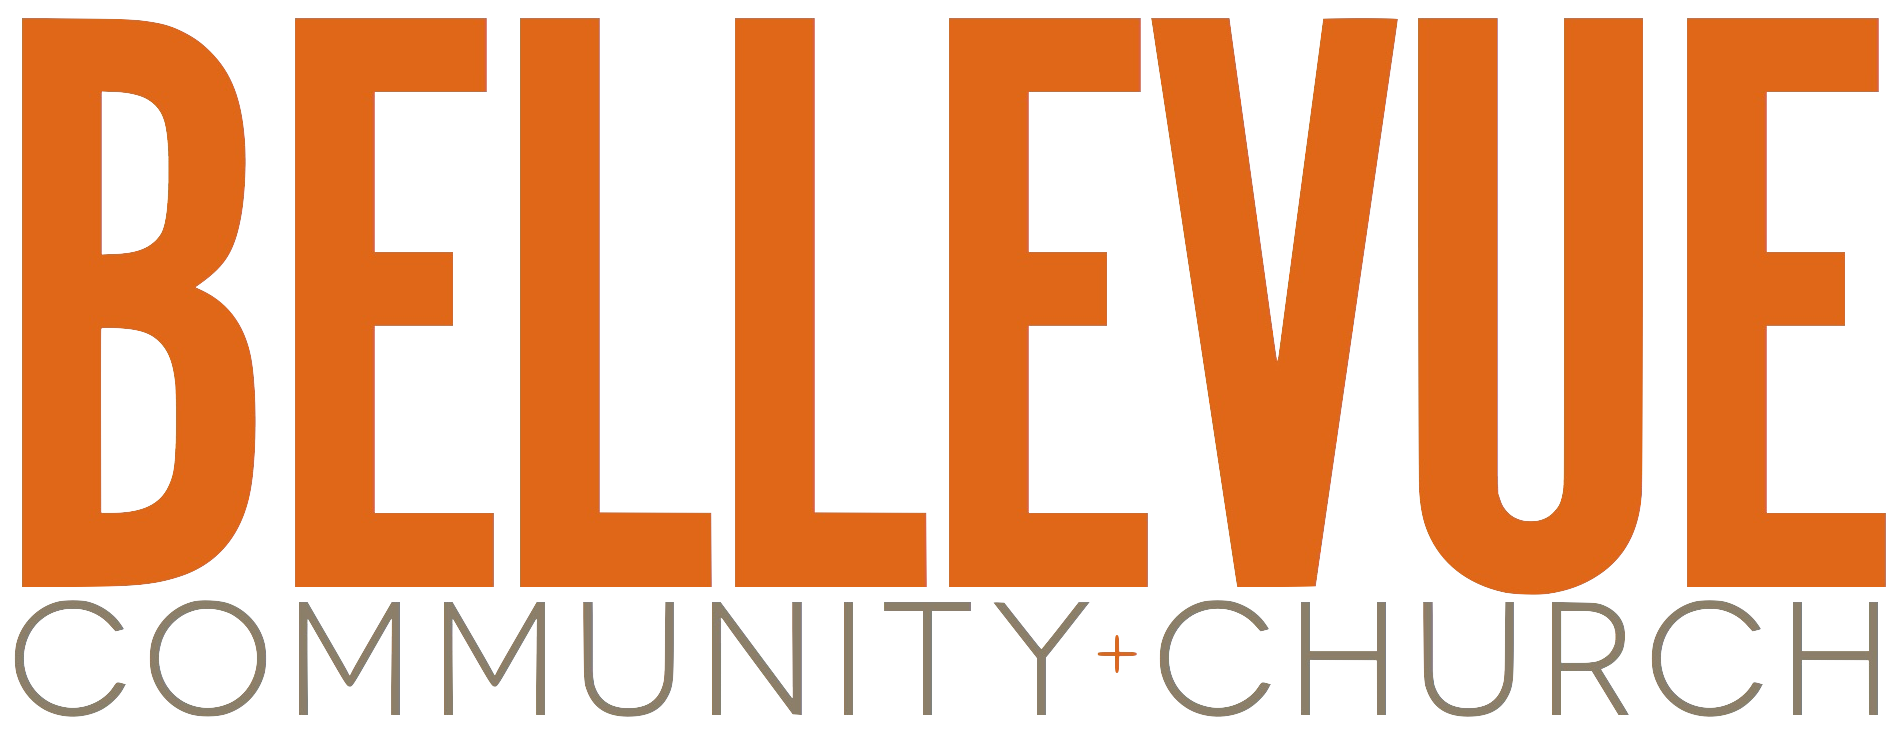 Bellevue Comm Church Logo.png